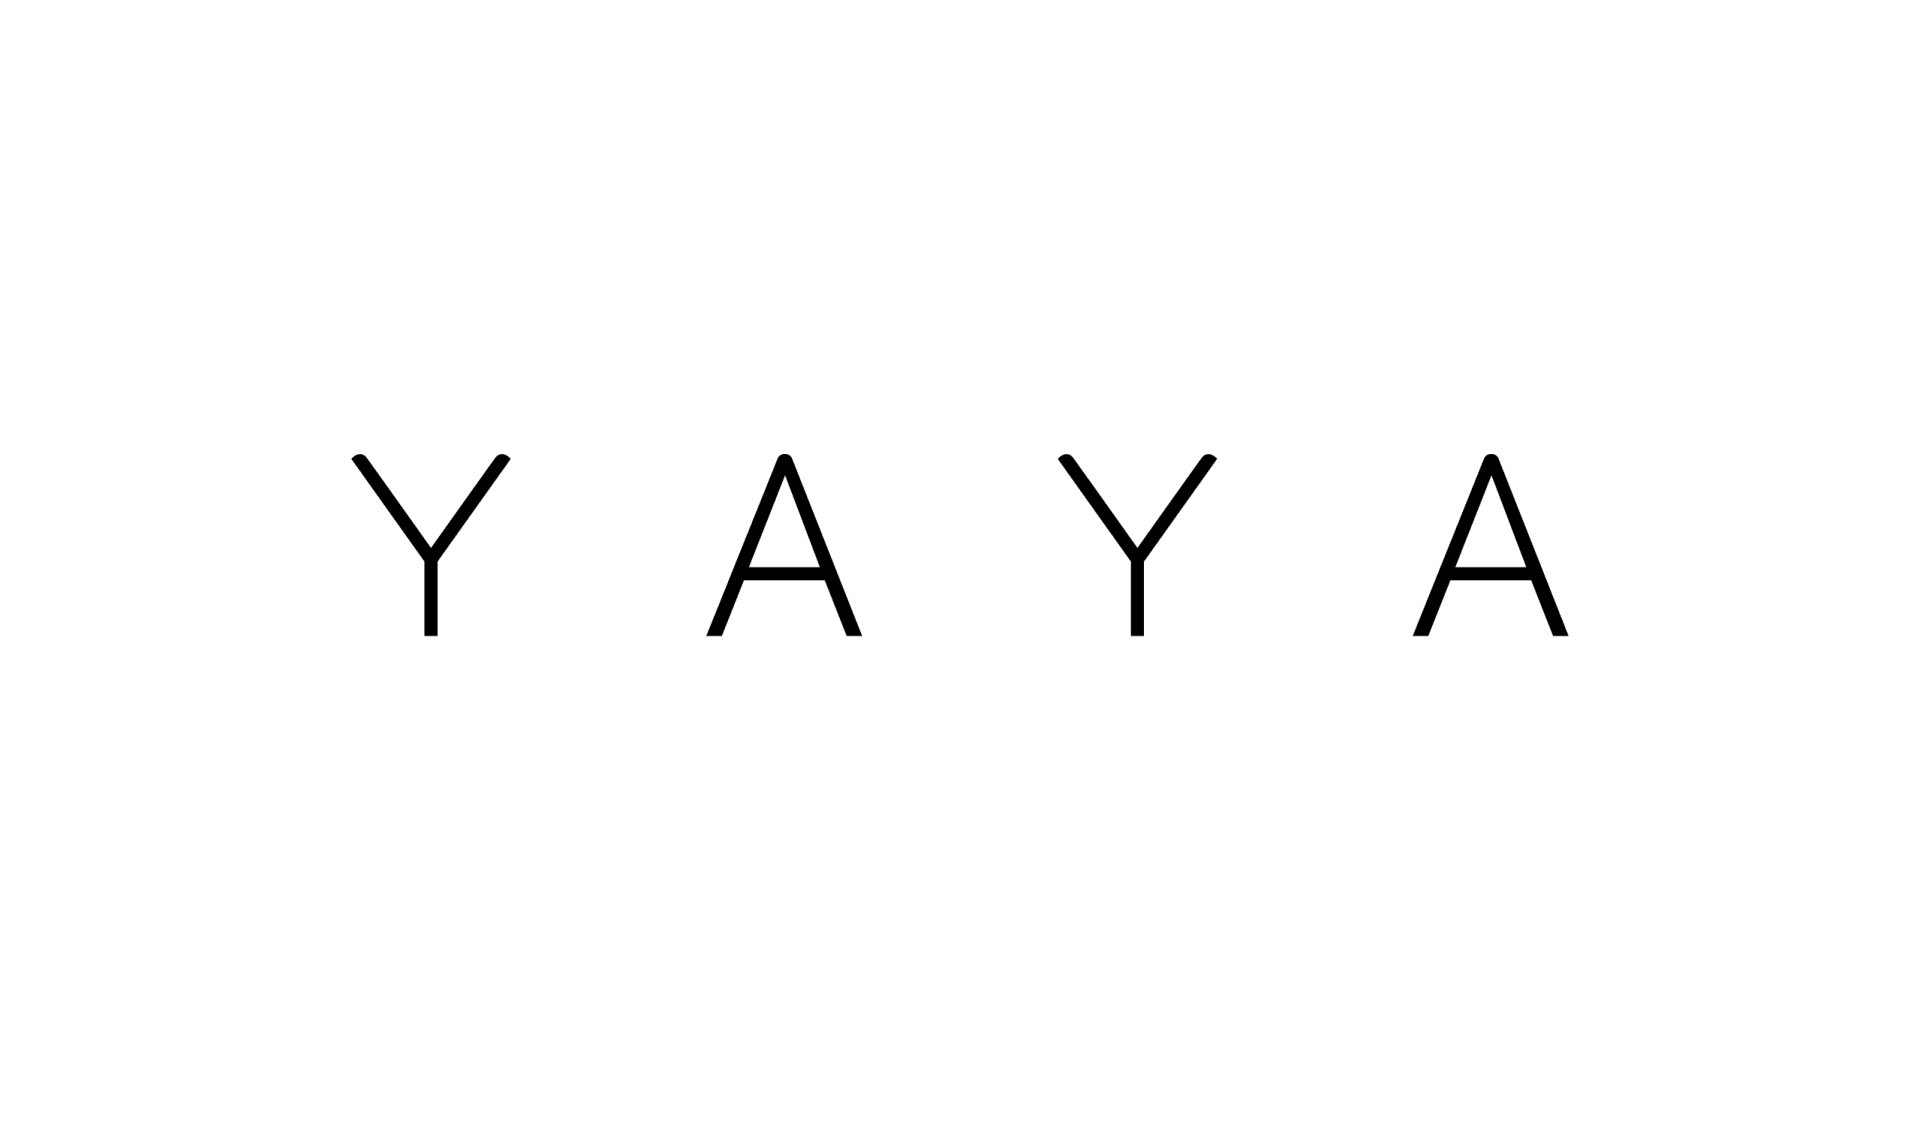 YAYA logo